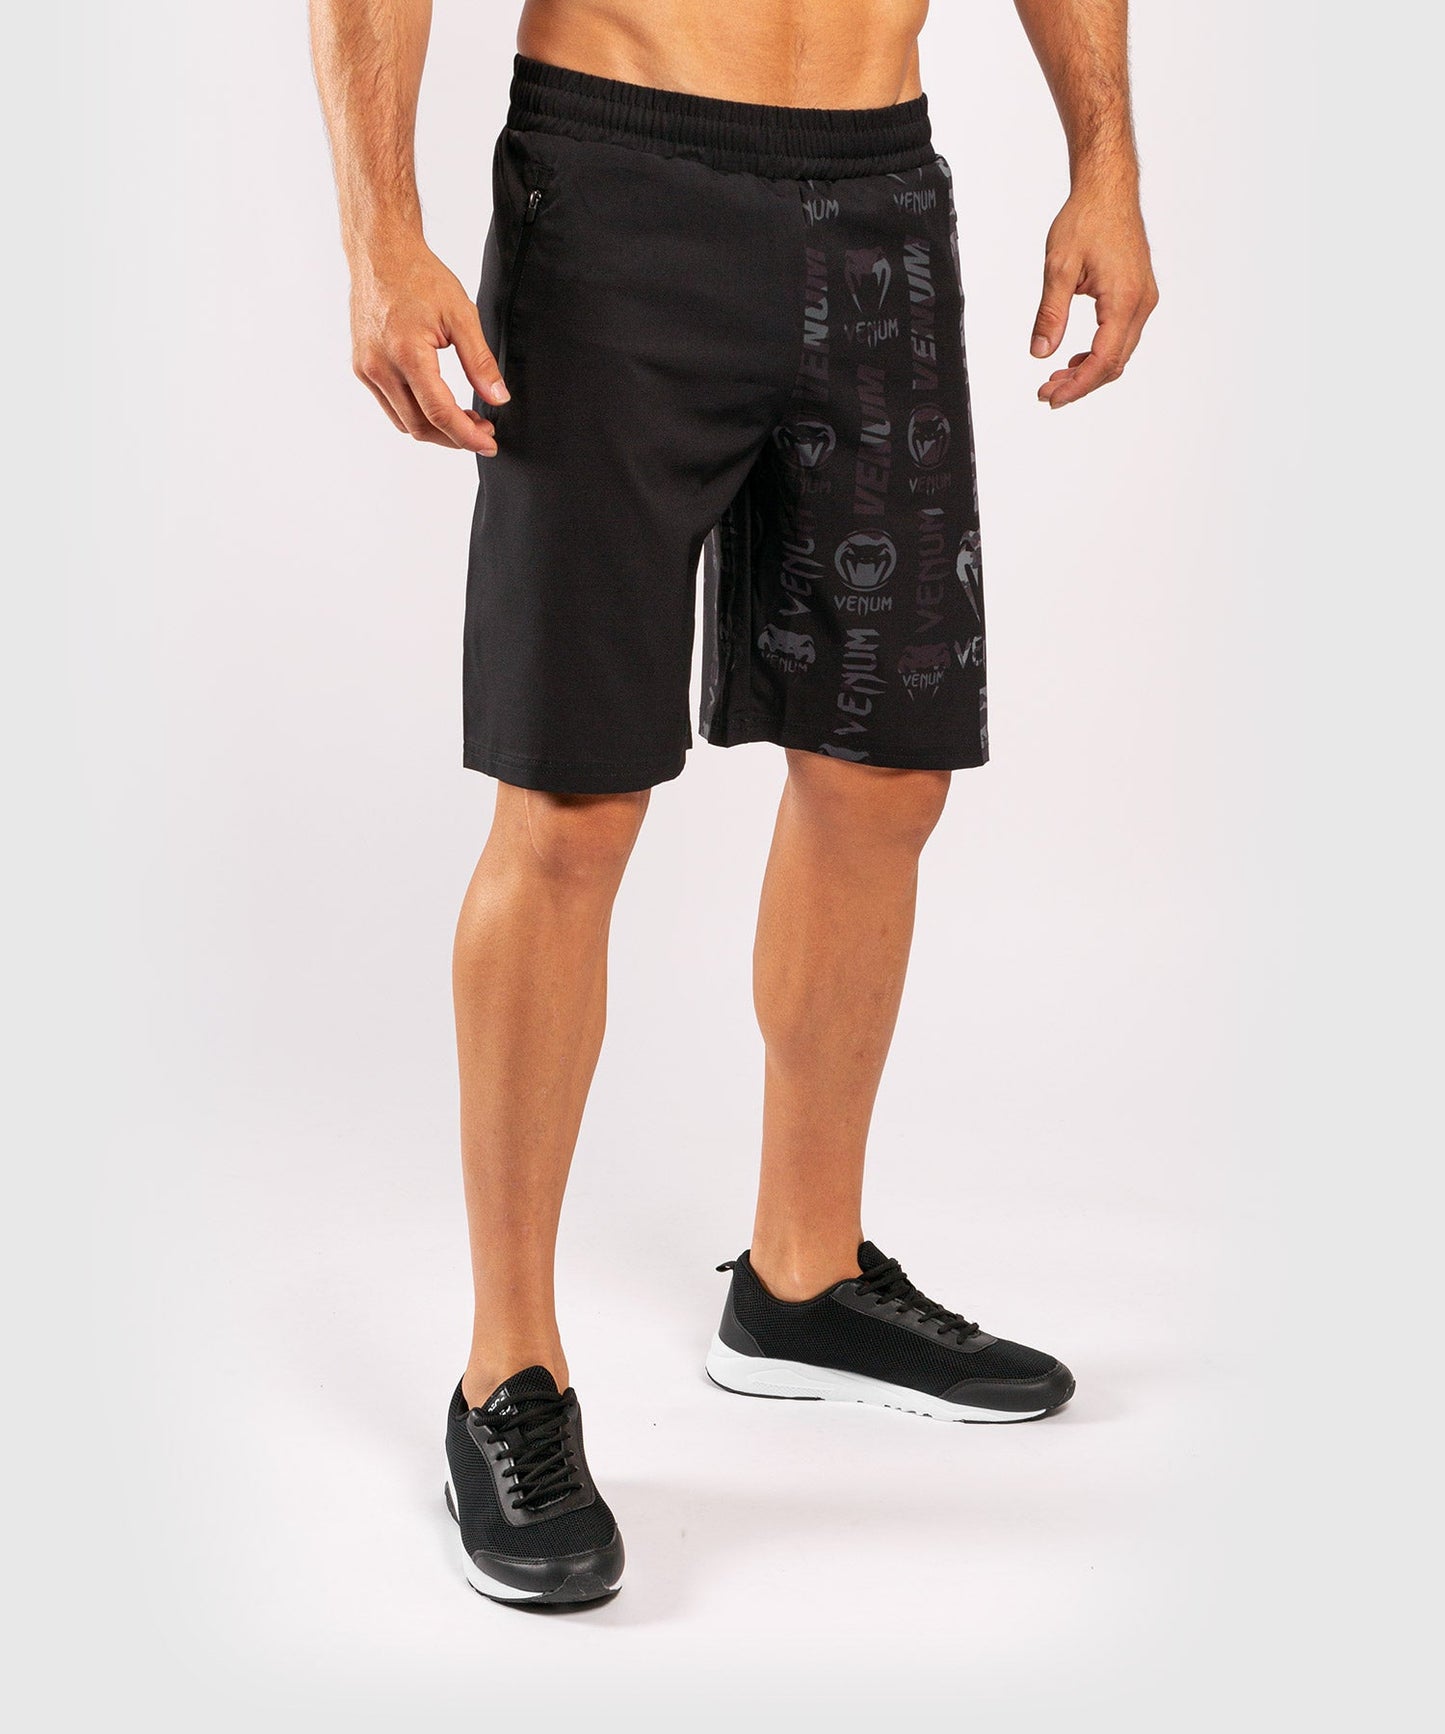 Venum Logos Training Shorts - Black/Urban Camo